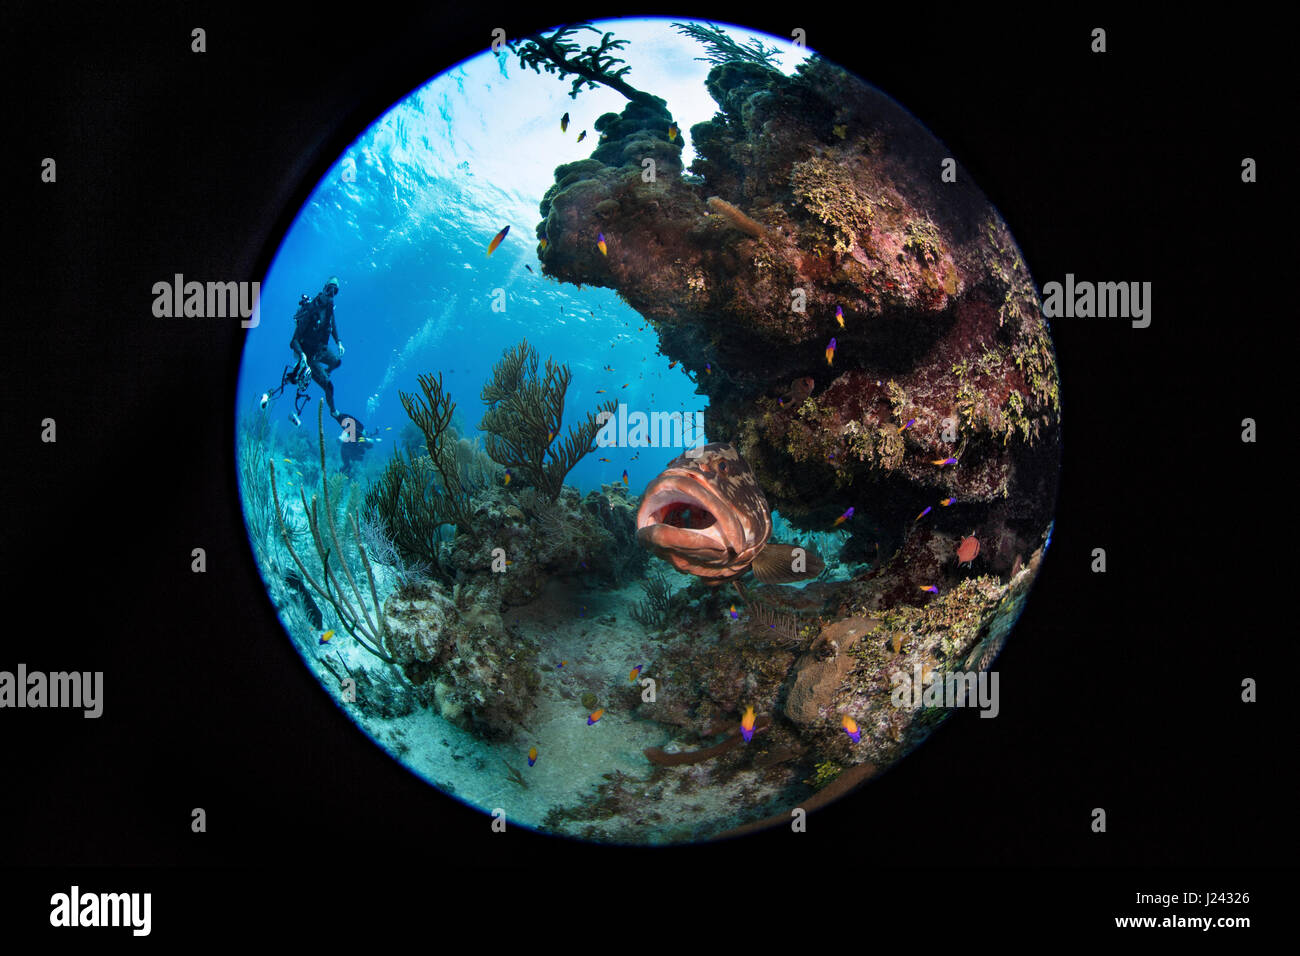 Nassau-Zackenbarsch auf Reinigungsstation. Offenem Mund Pose zeigt seine Bereitschaft für kleine Fische, das Tier zu nähern. Stockfoto